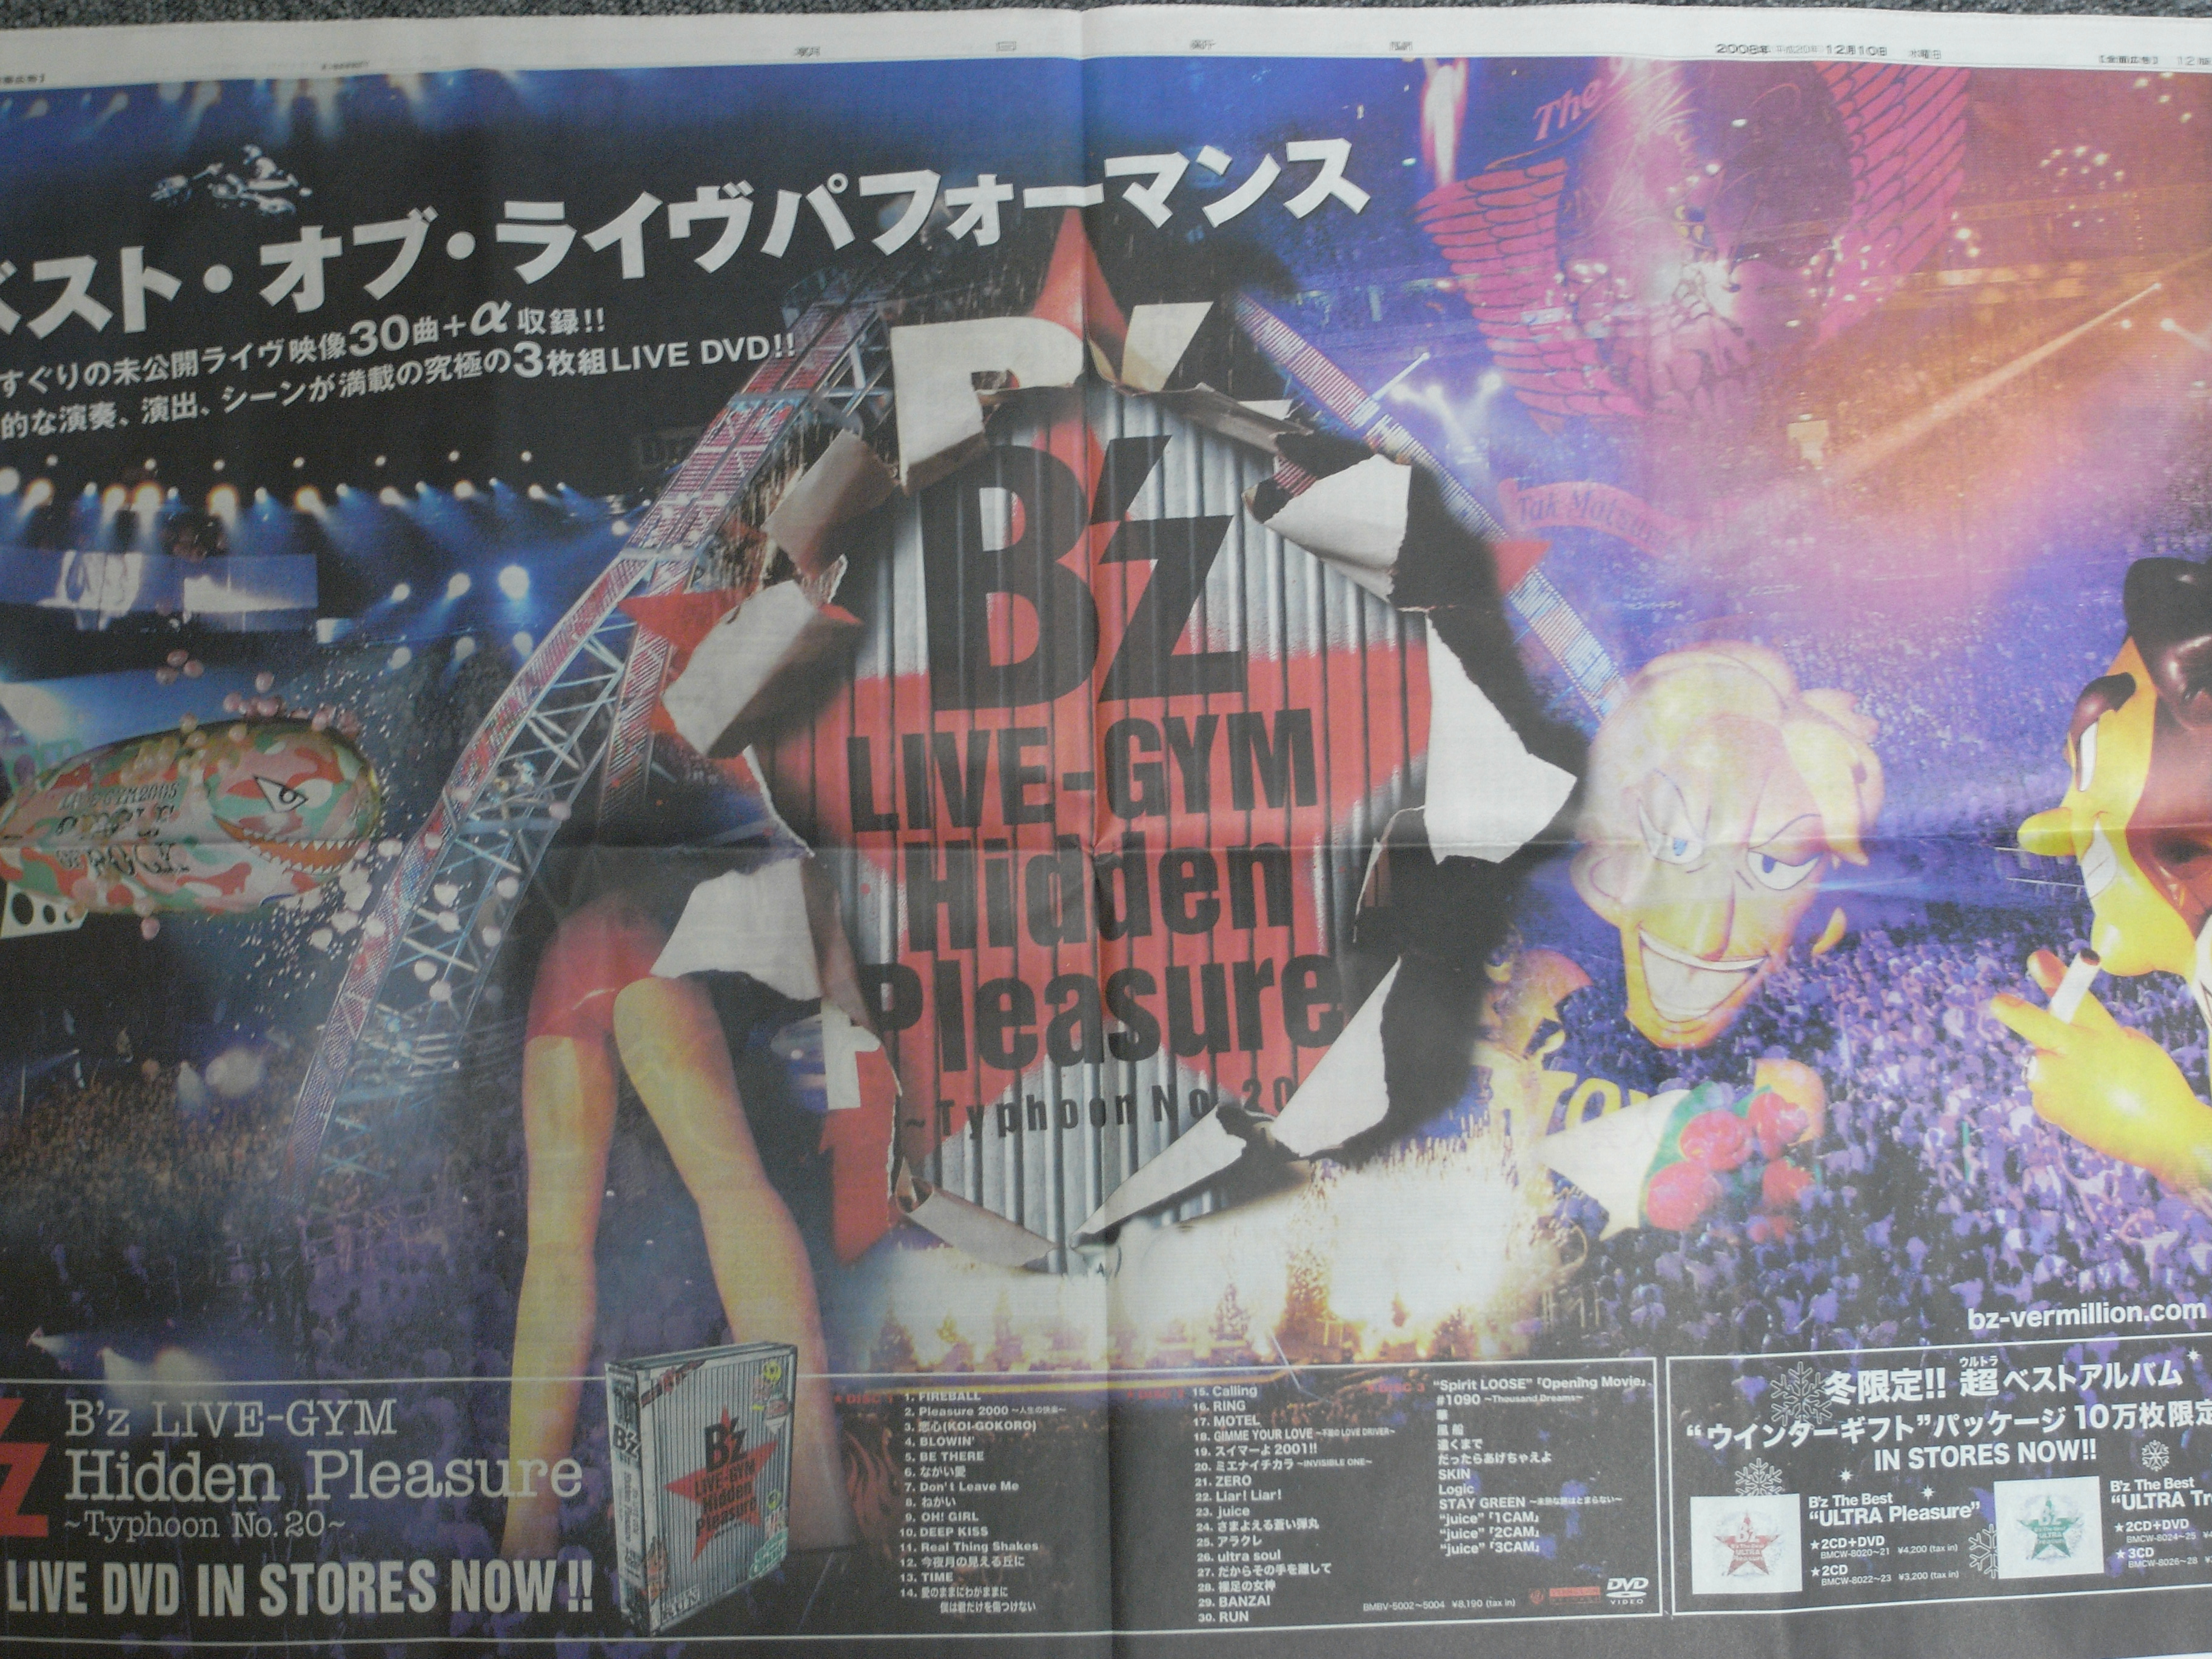 12/10 朝日新聞、「B'z LIVE-GYM Hidden Pleasure ～Typhoon No.20 ...